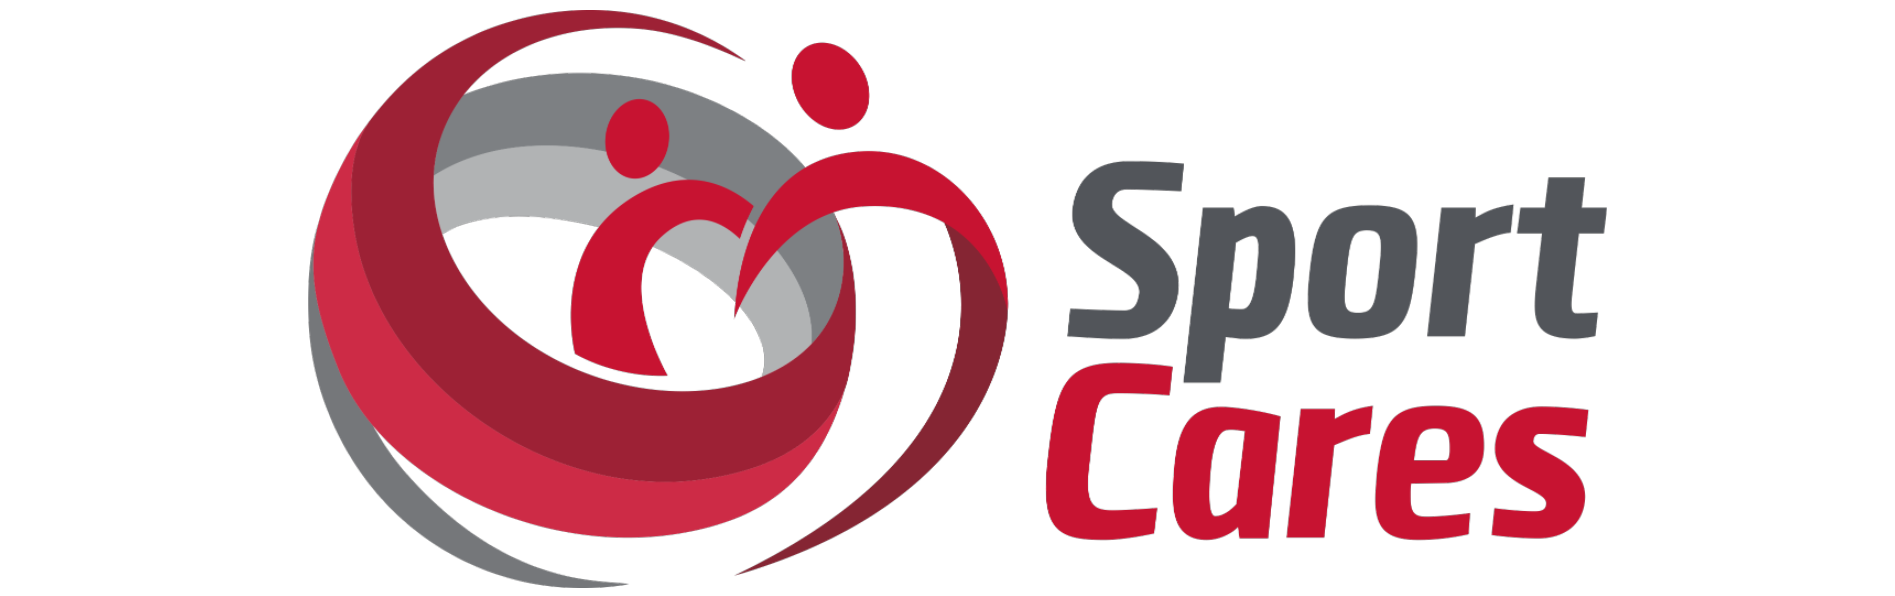 sportcares-logo-1